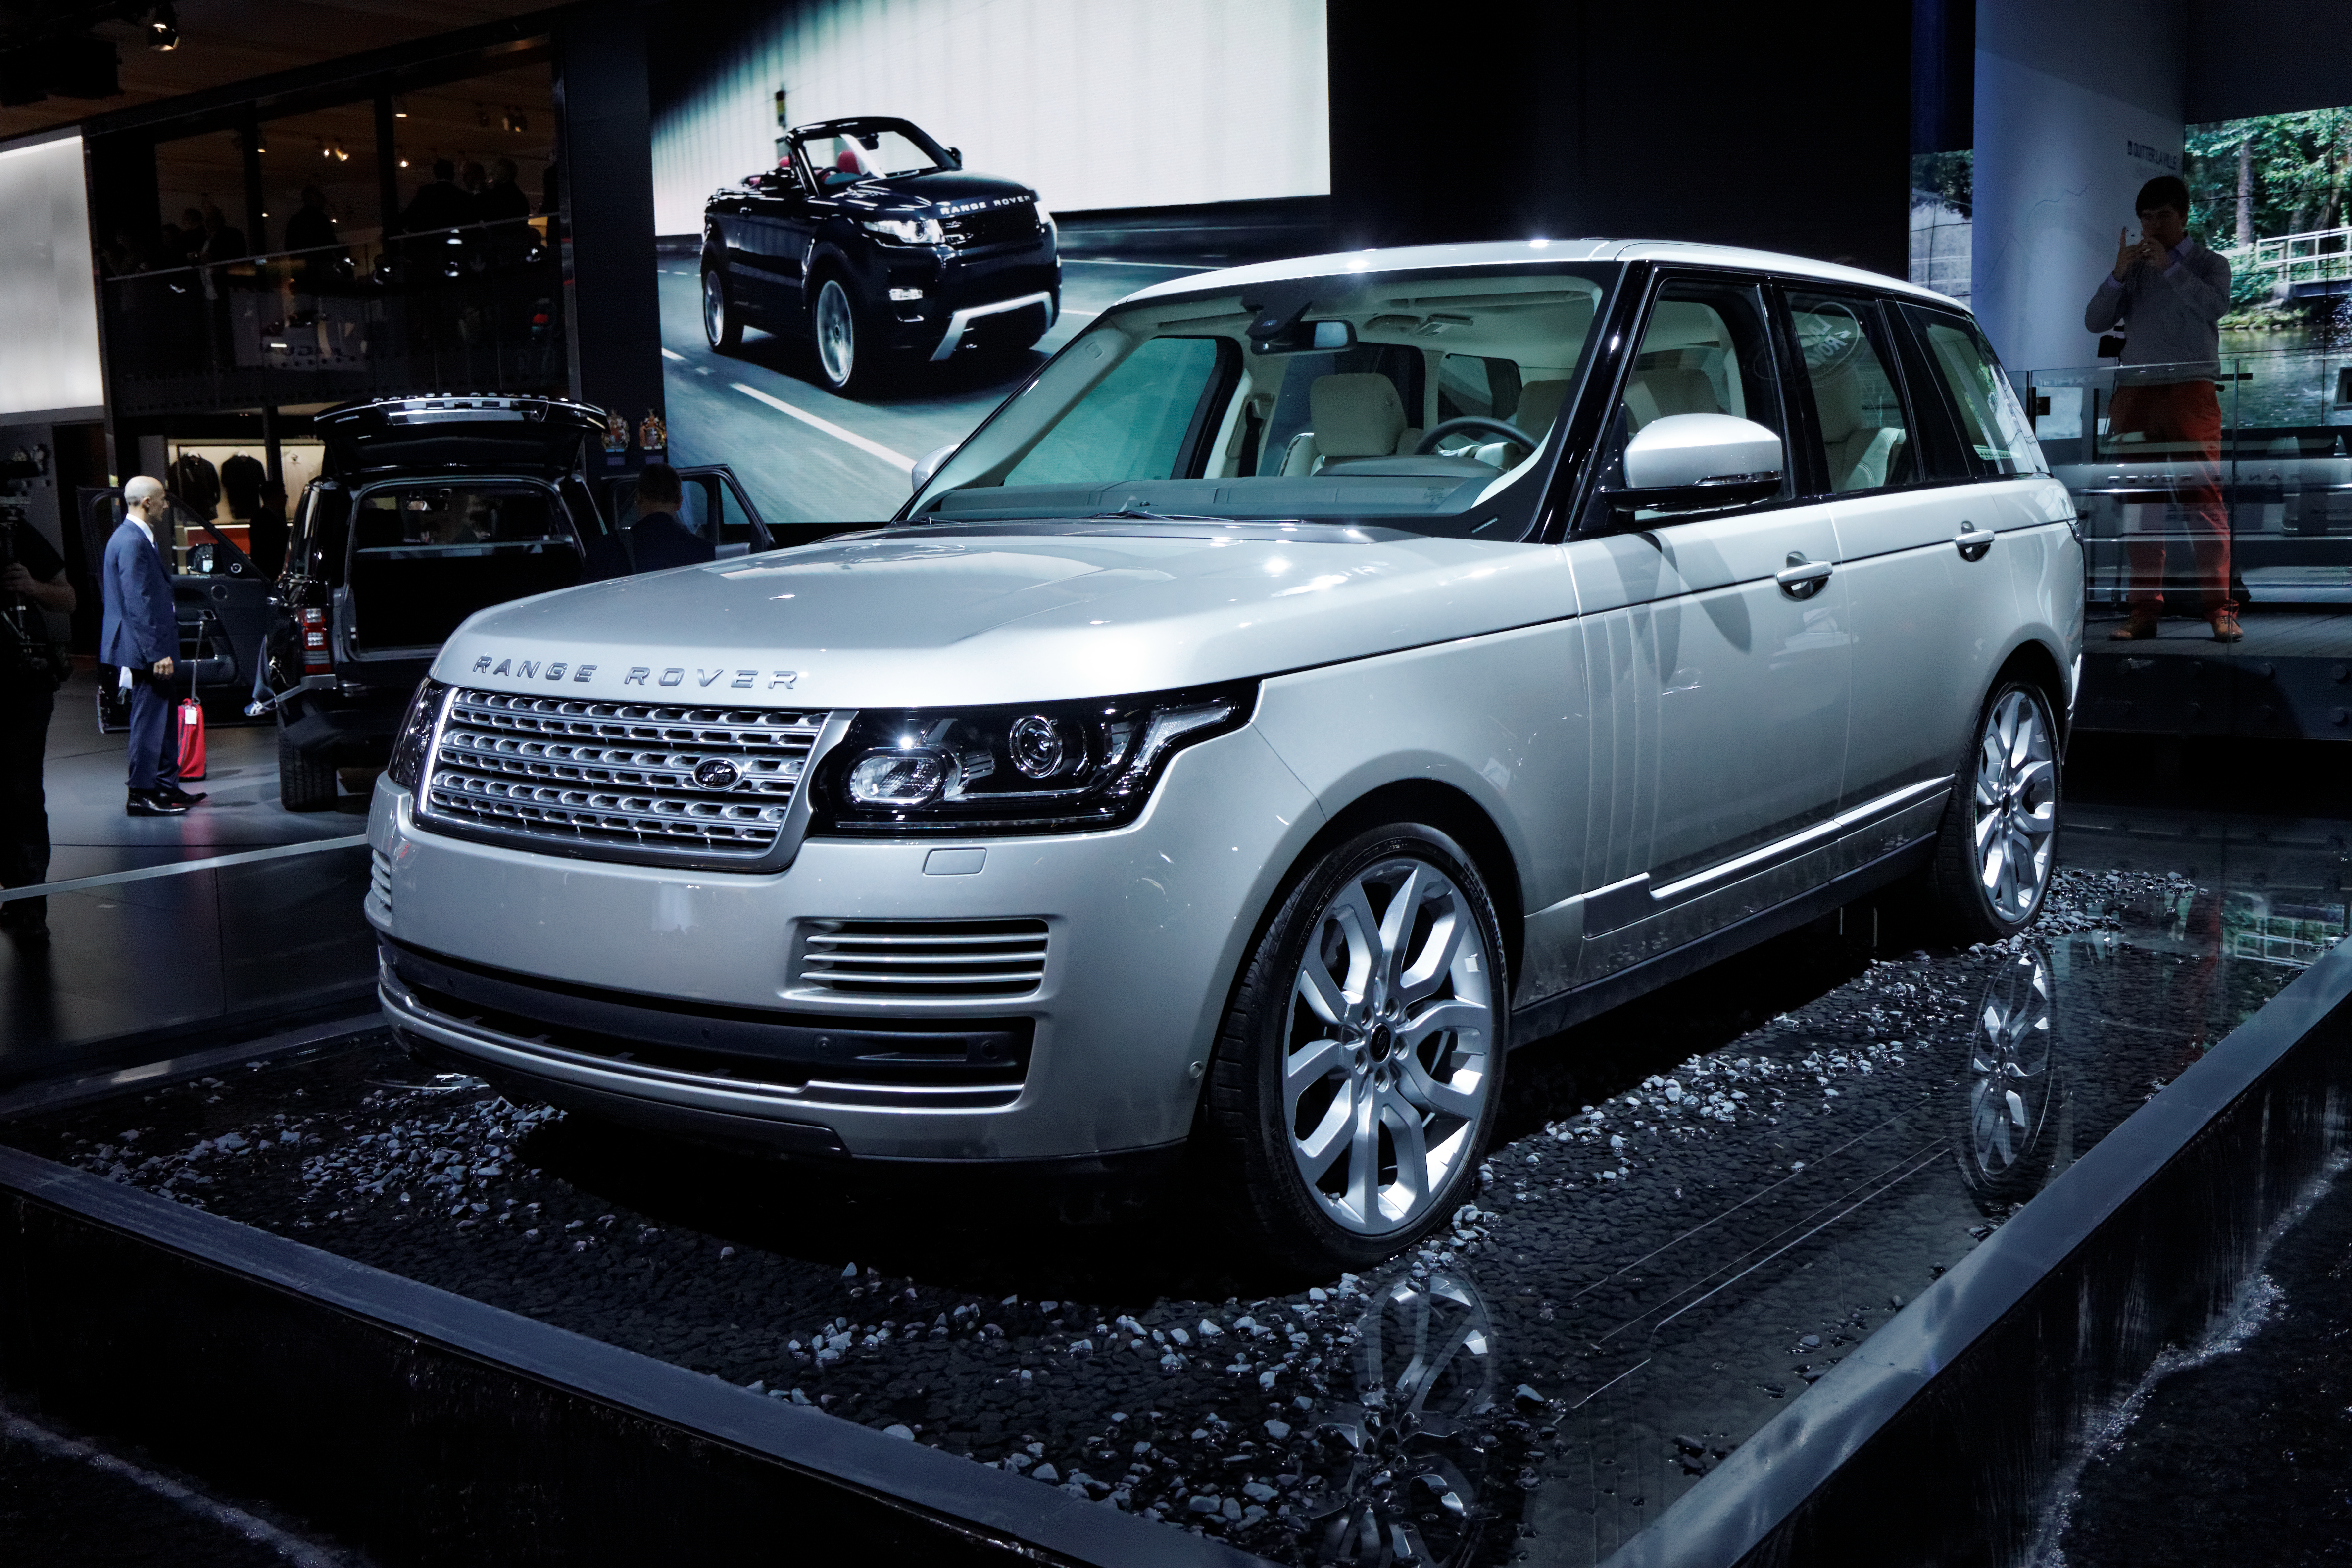 Land Rover - Range Rover - Mondial de l'Automobile de Paris 2012 - 003